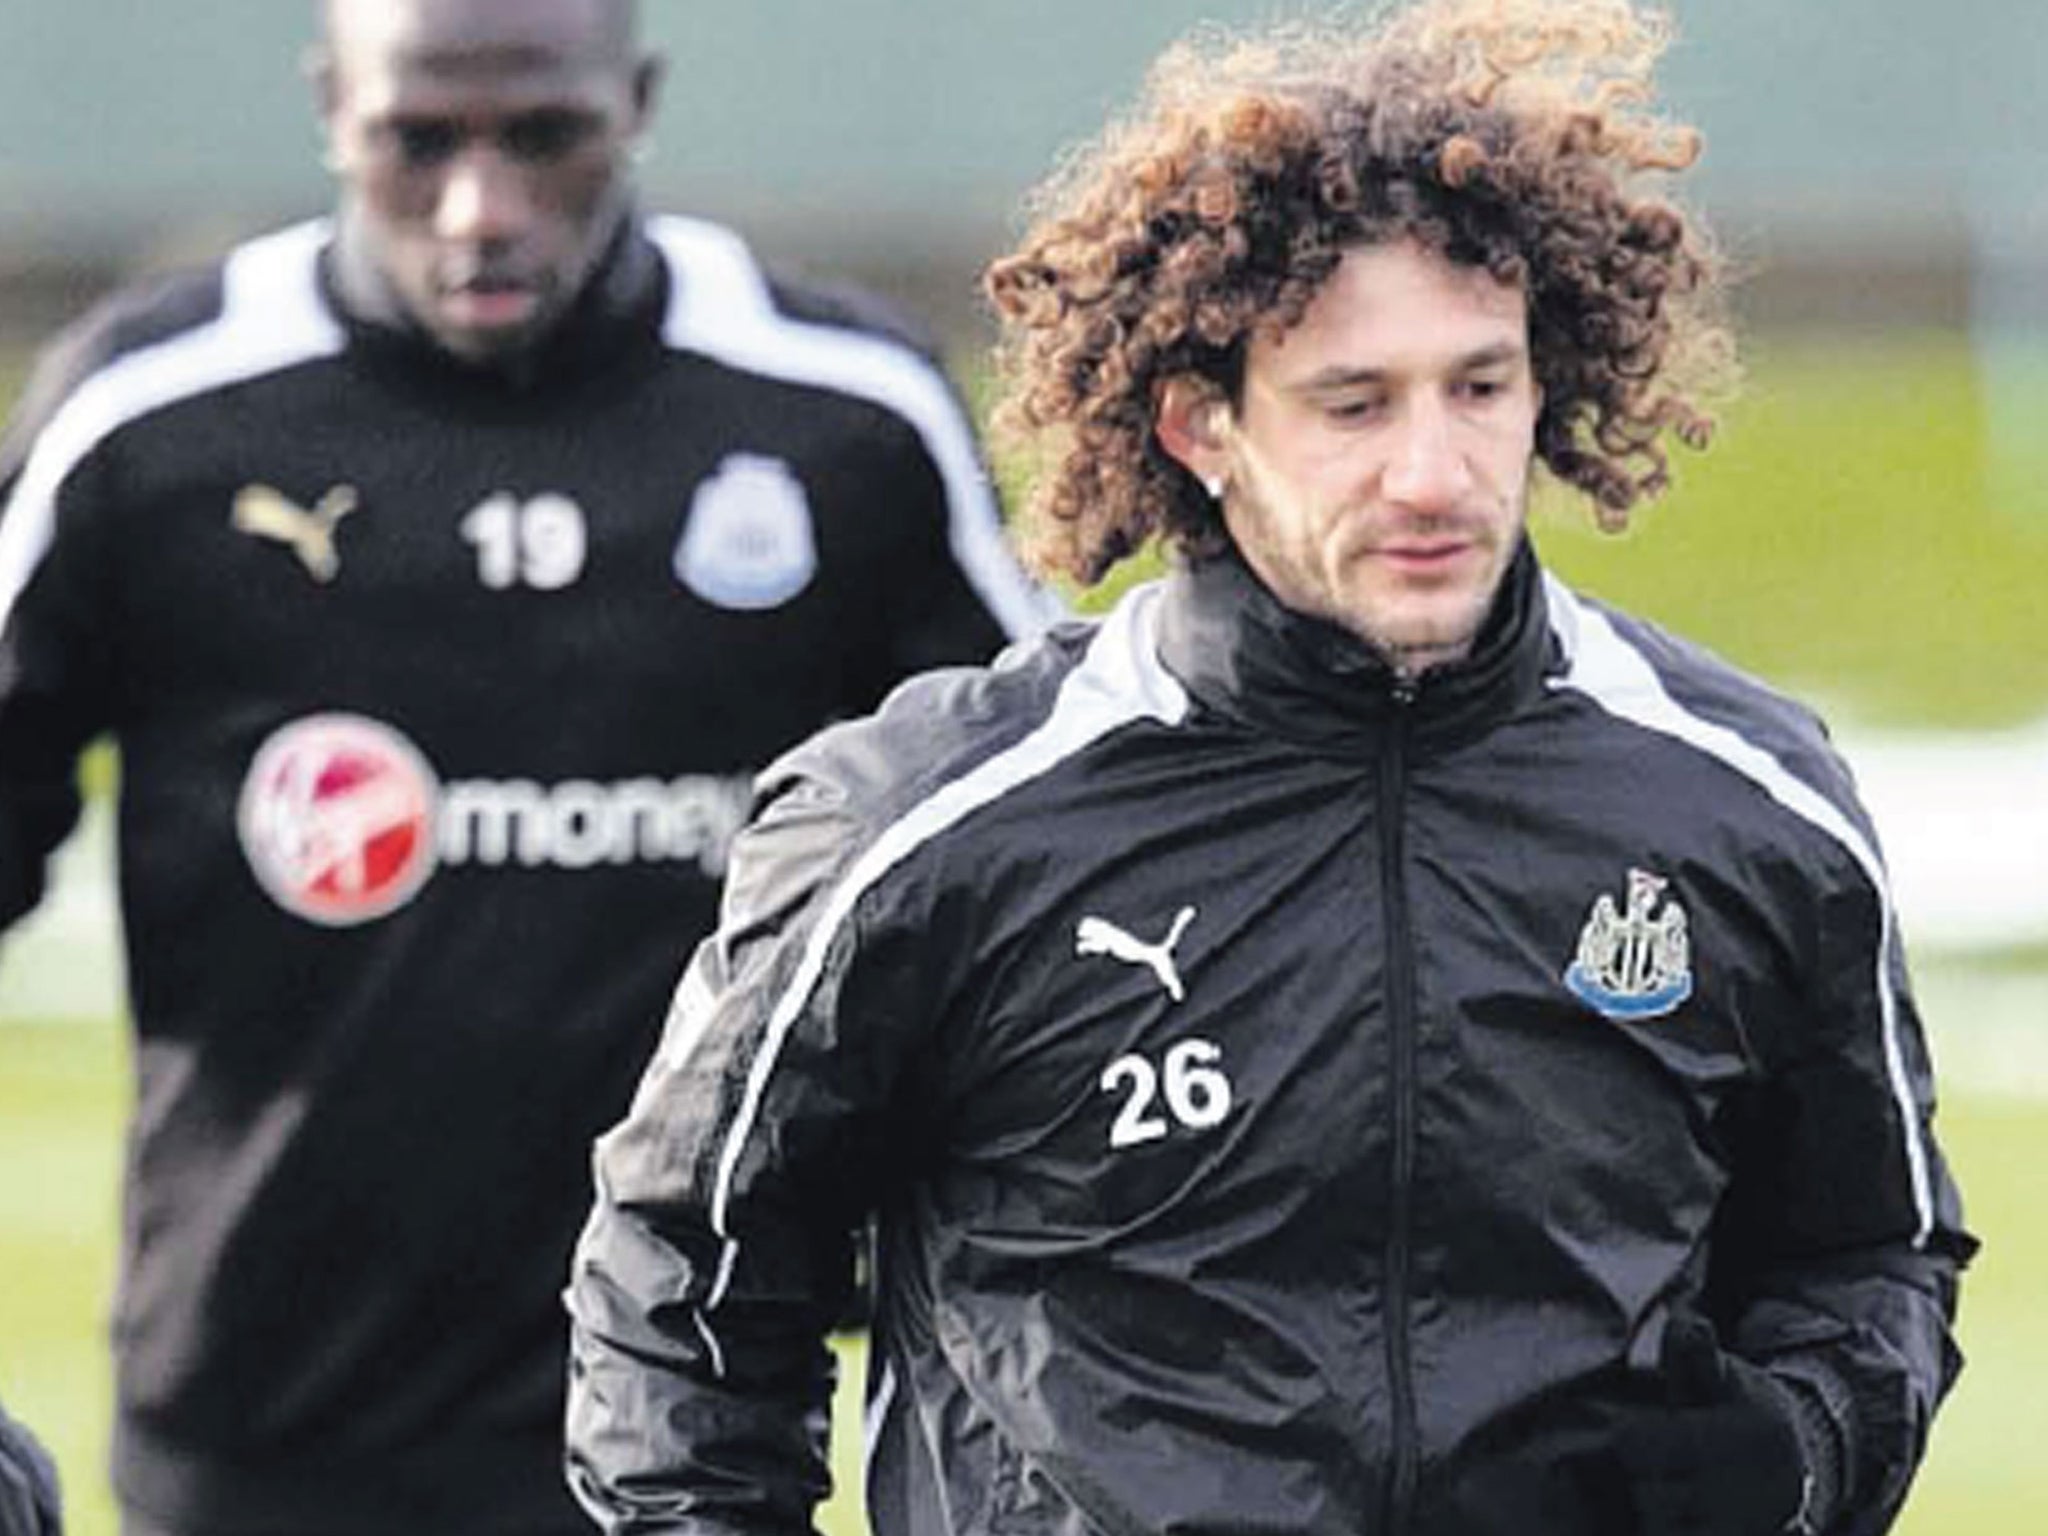 Newcastle’s Fabricio Coloccini (right) in training with Moussa
Sissoko